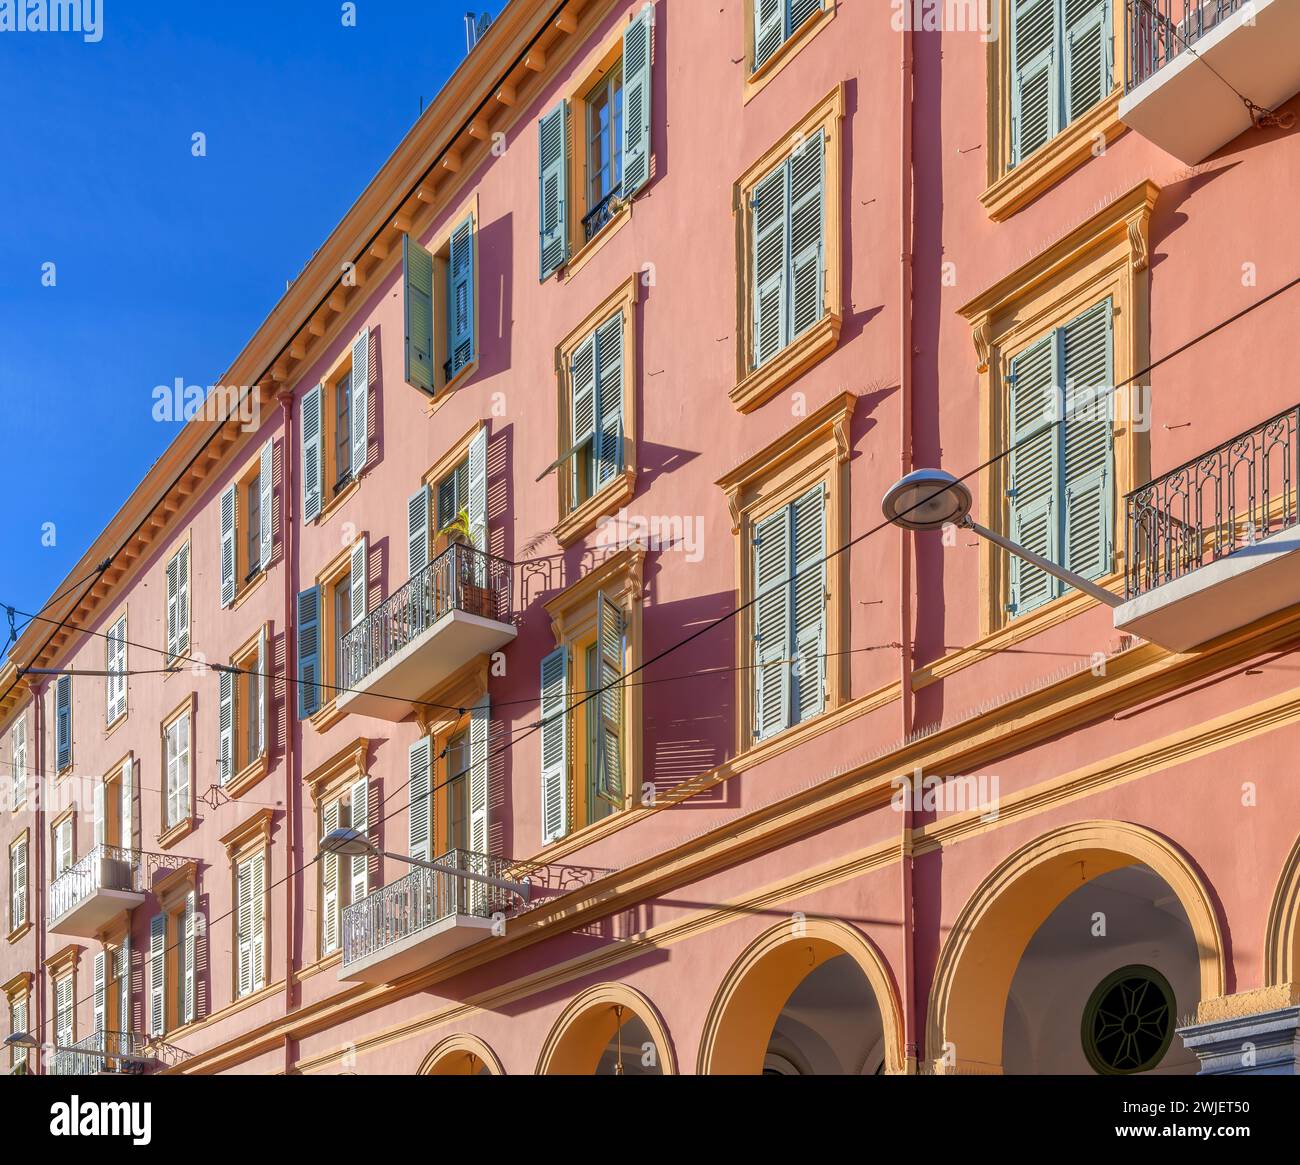 Appartements chic de couleur rose poussiéreux avec volets bleu-vert au Cœur de Nice - le cœur de Nice. La Côte d'Azur, France. Banque D'Images